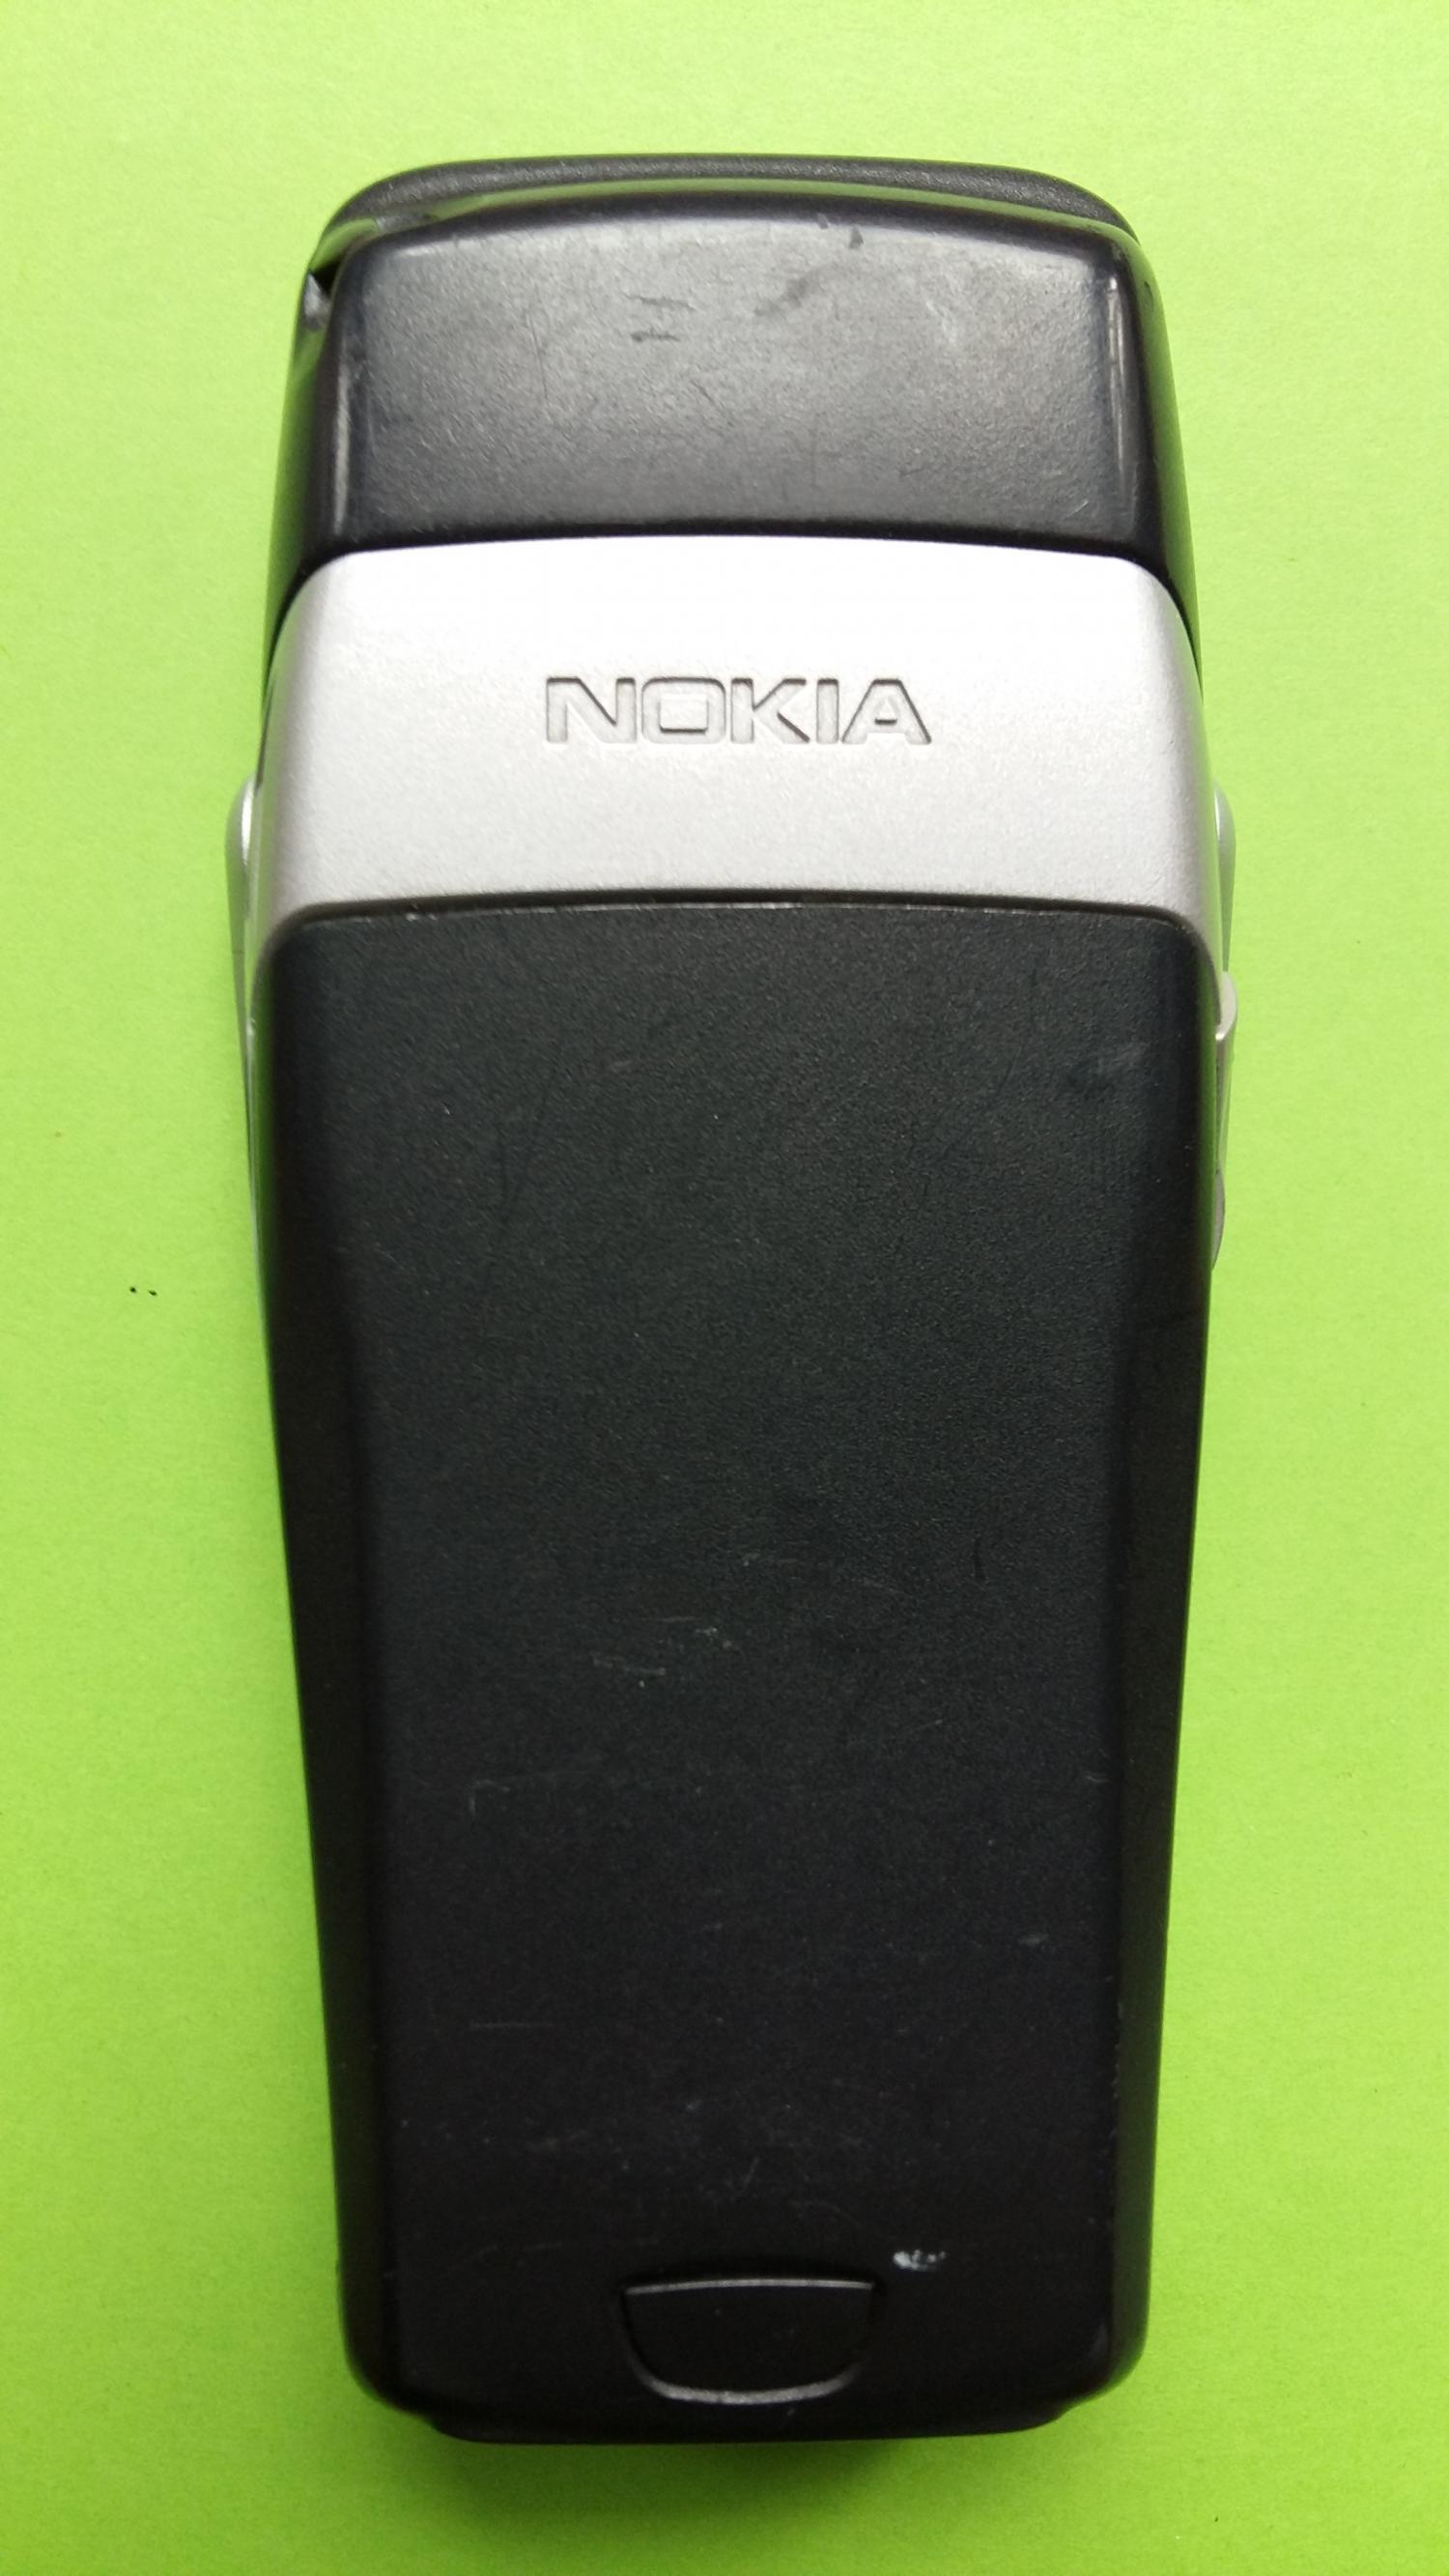 image-7331690-Nokia 6800 (1)4.jpg